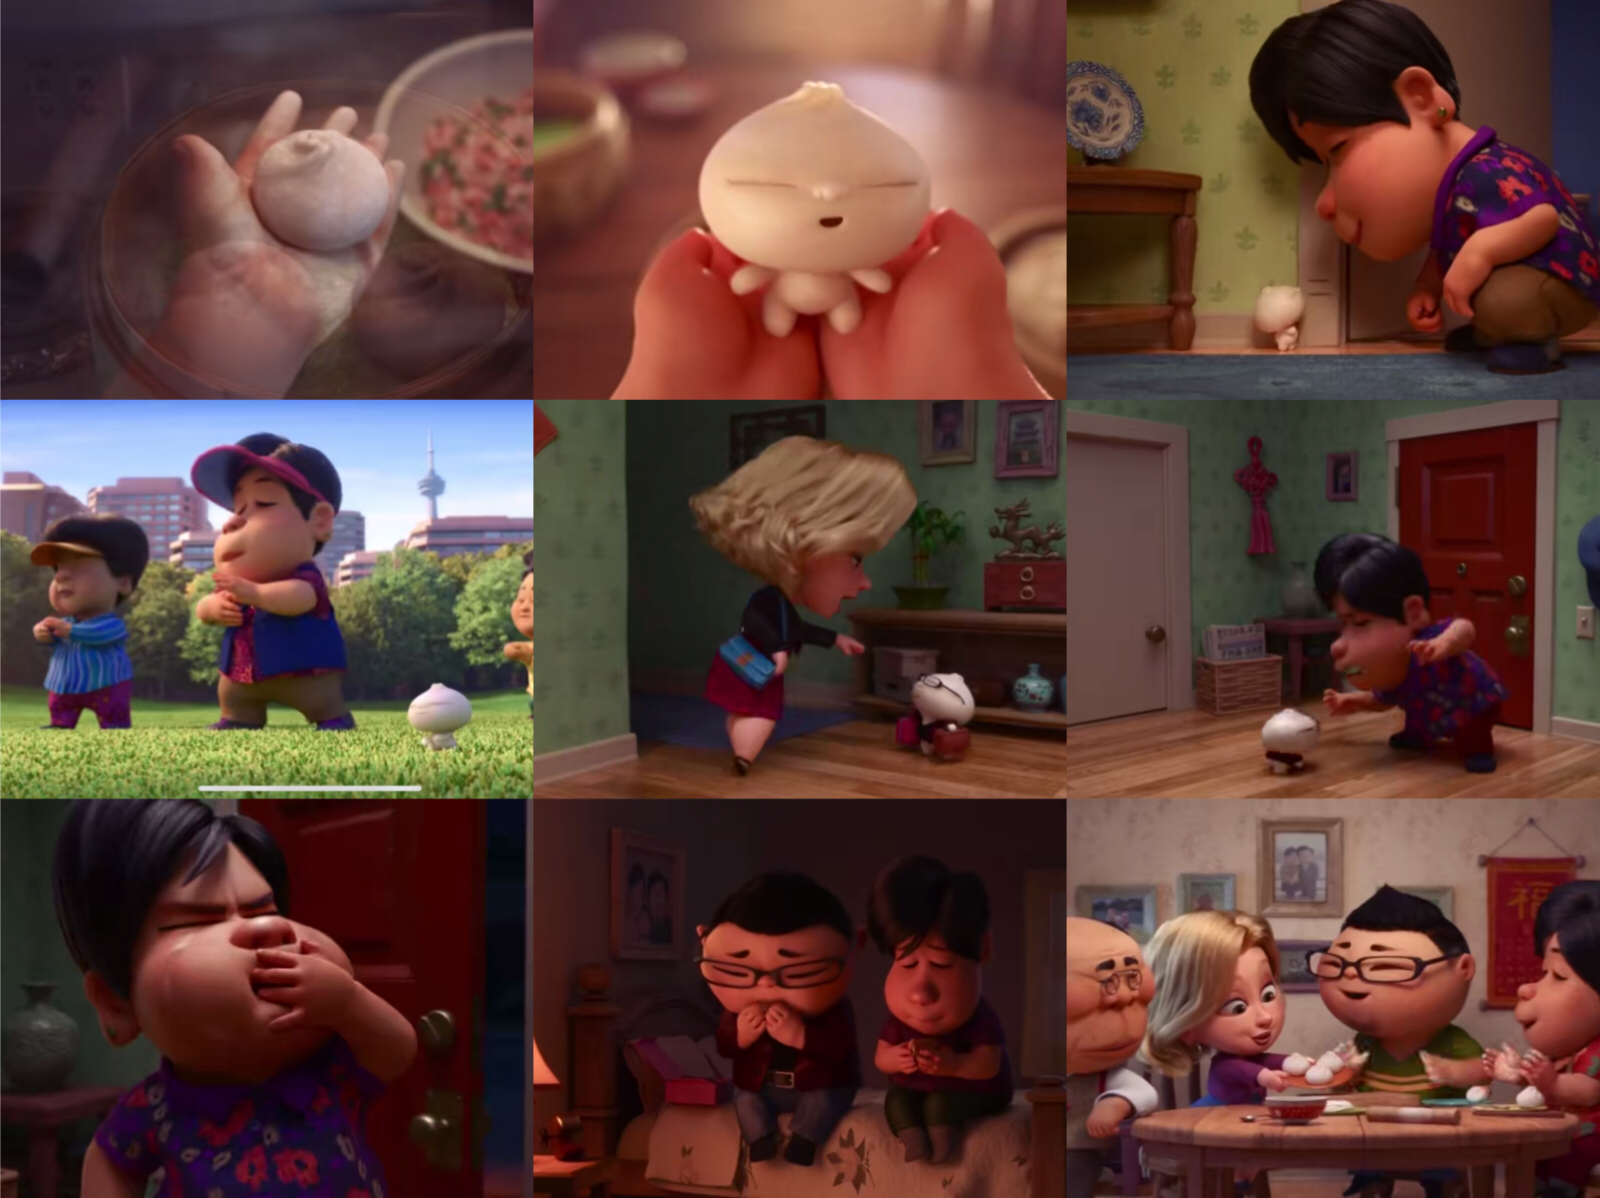 在刚刚结束的奥斯卡颁奖典礼上,一部中国风的动画短片《包宝宝》拿下